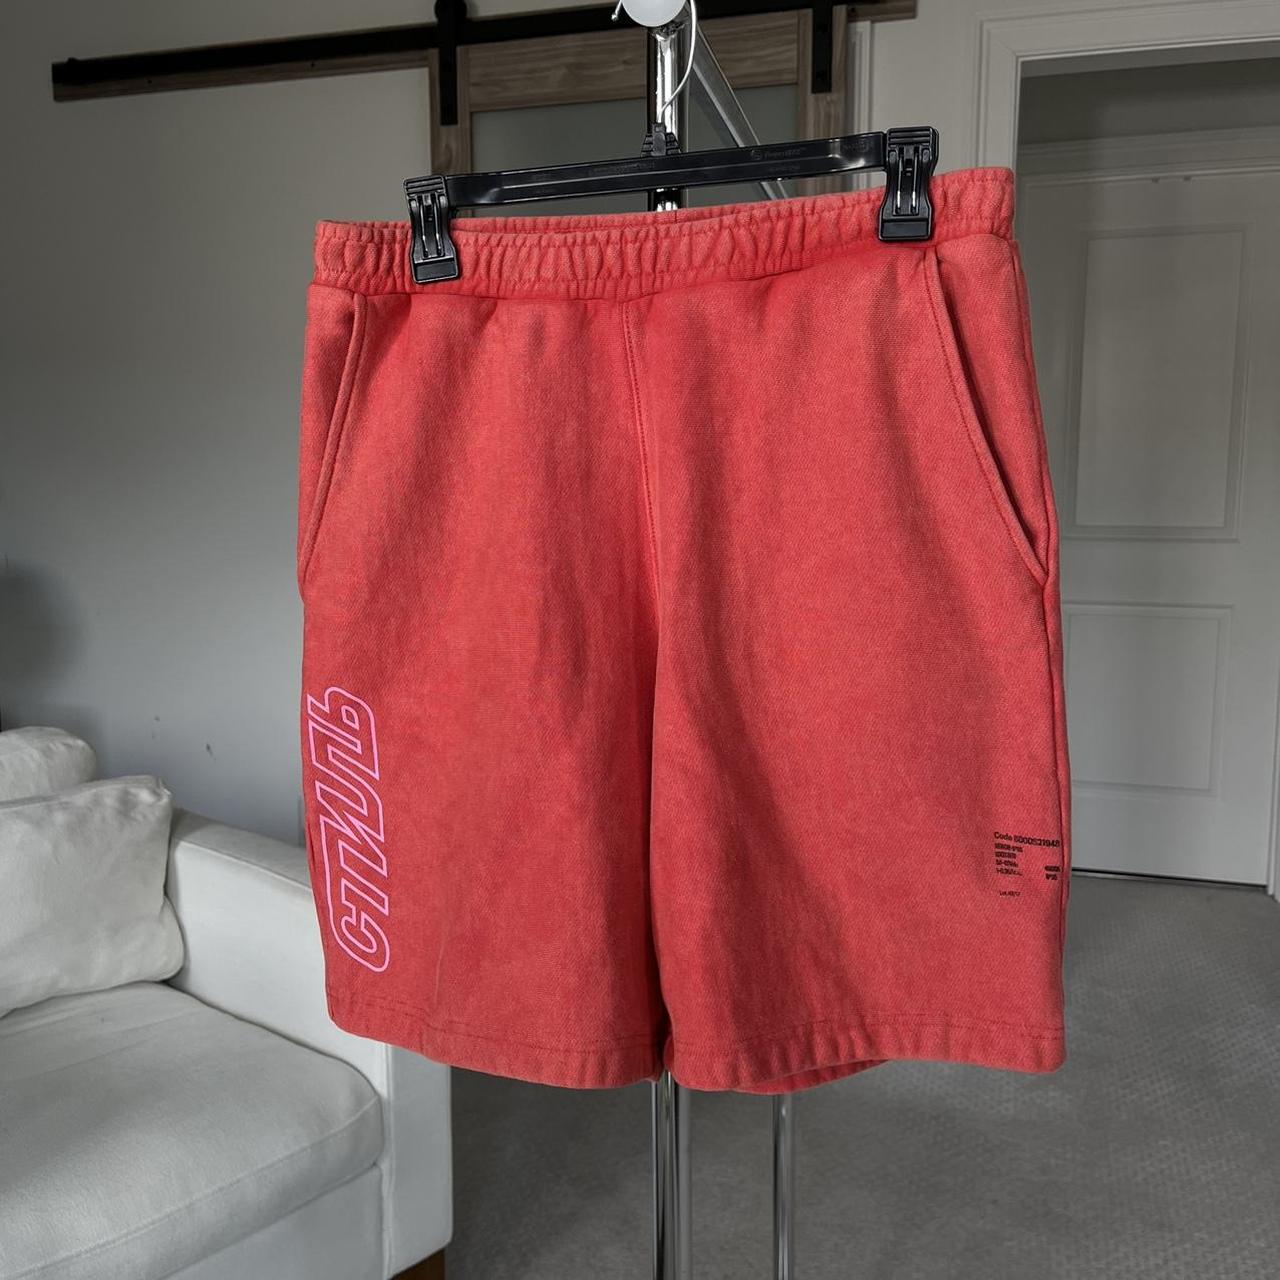 Product Image 1 - Heron Preston shorts (unisex)

Size S